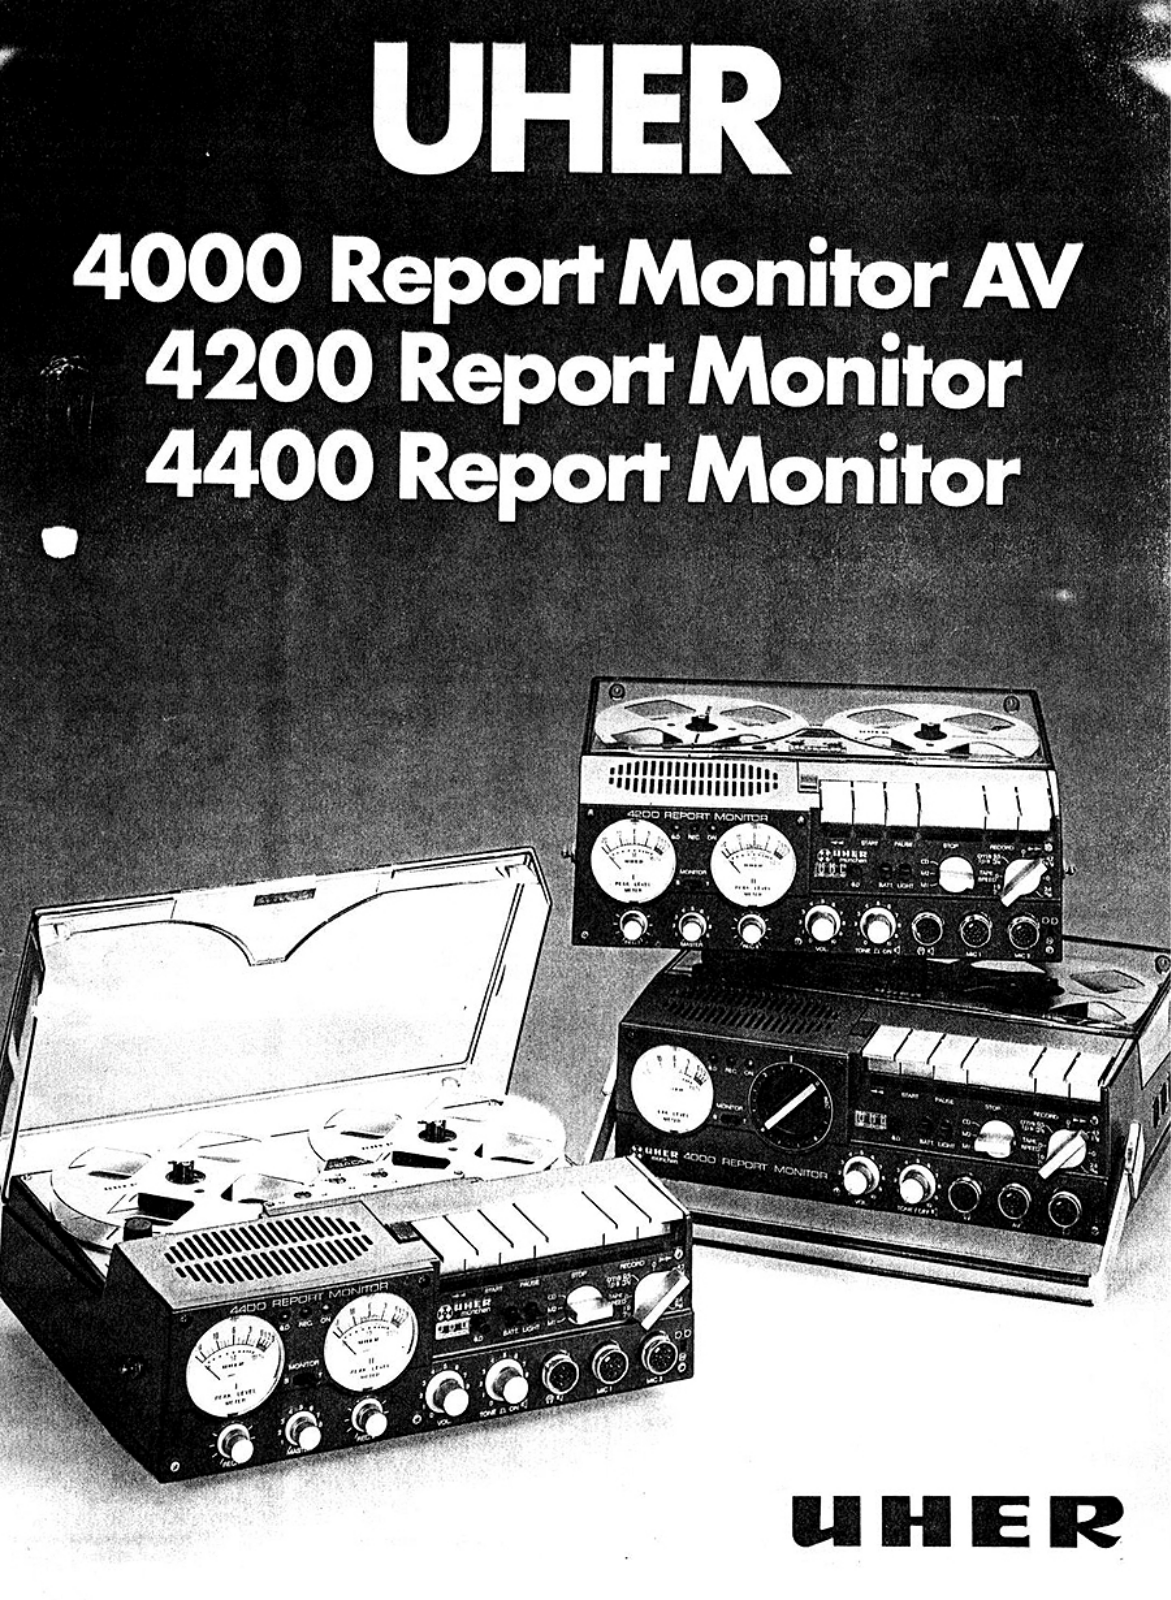 Uher 4000 Report Monitor AV Brochure